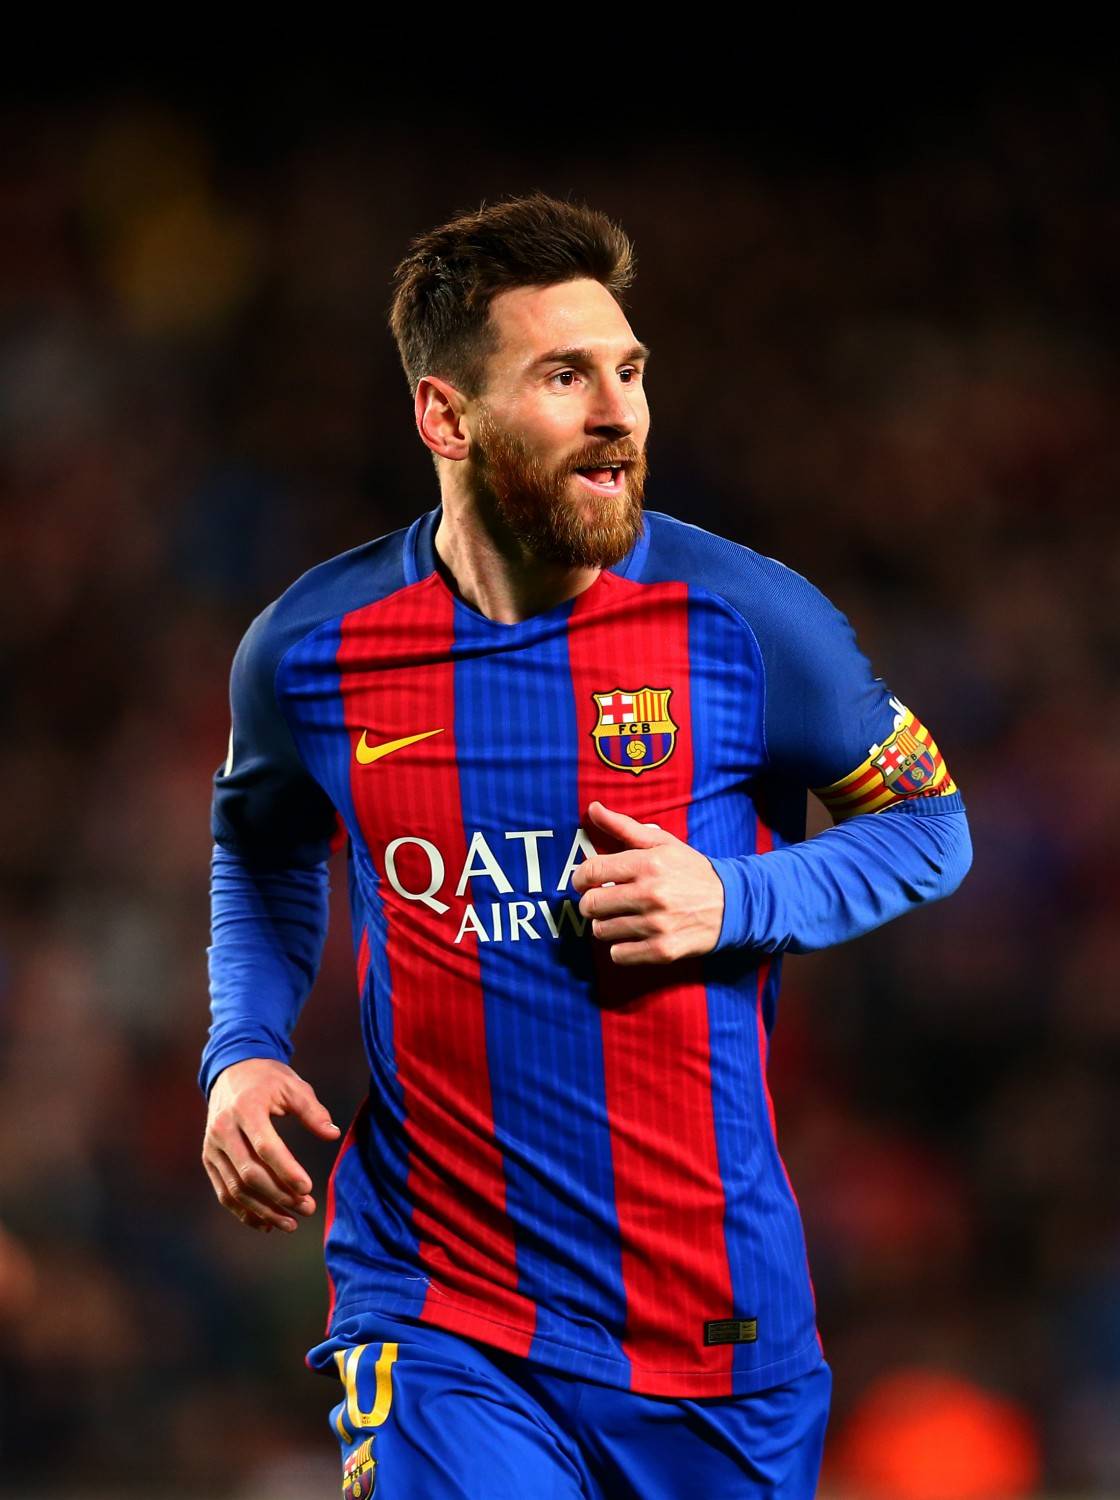 Egitto, l'ex ministro Hawass attacca Messi: "È davvero un idiota"